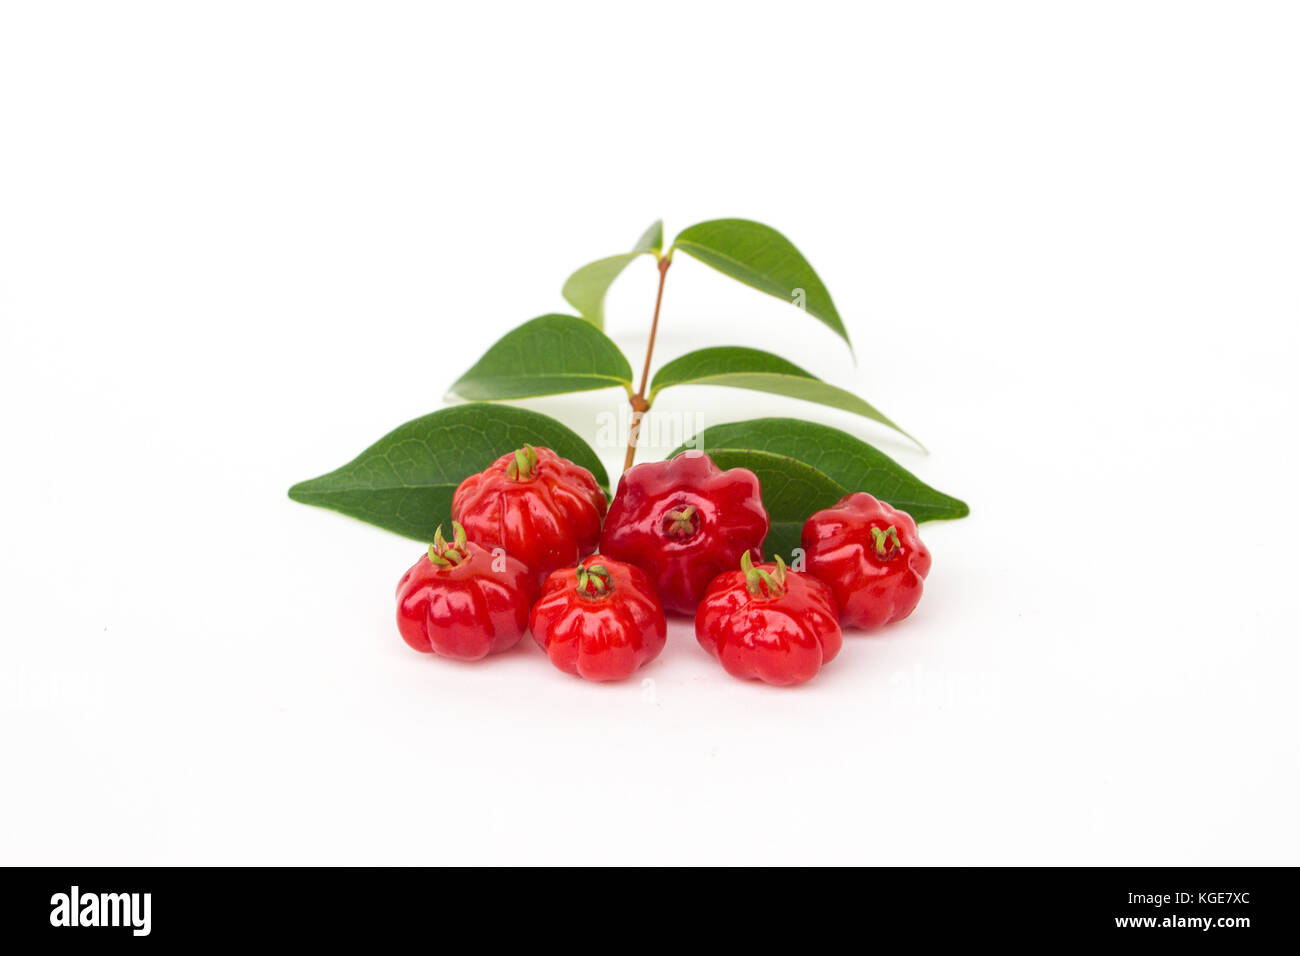 Brazilian cherry: pitanga (Eugenia uniflora). White background. Stock Photo